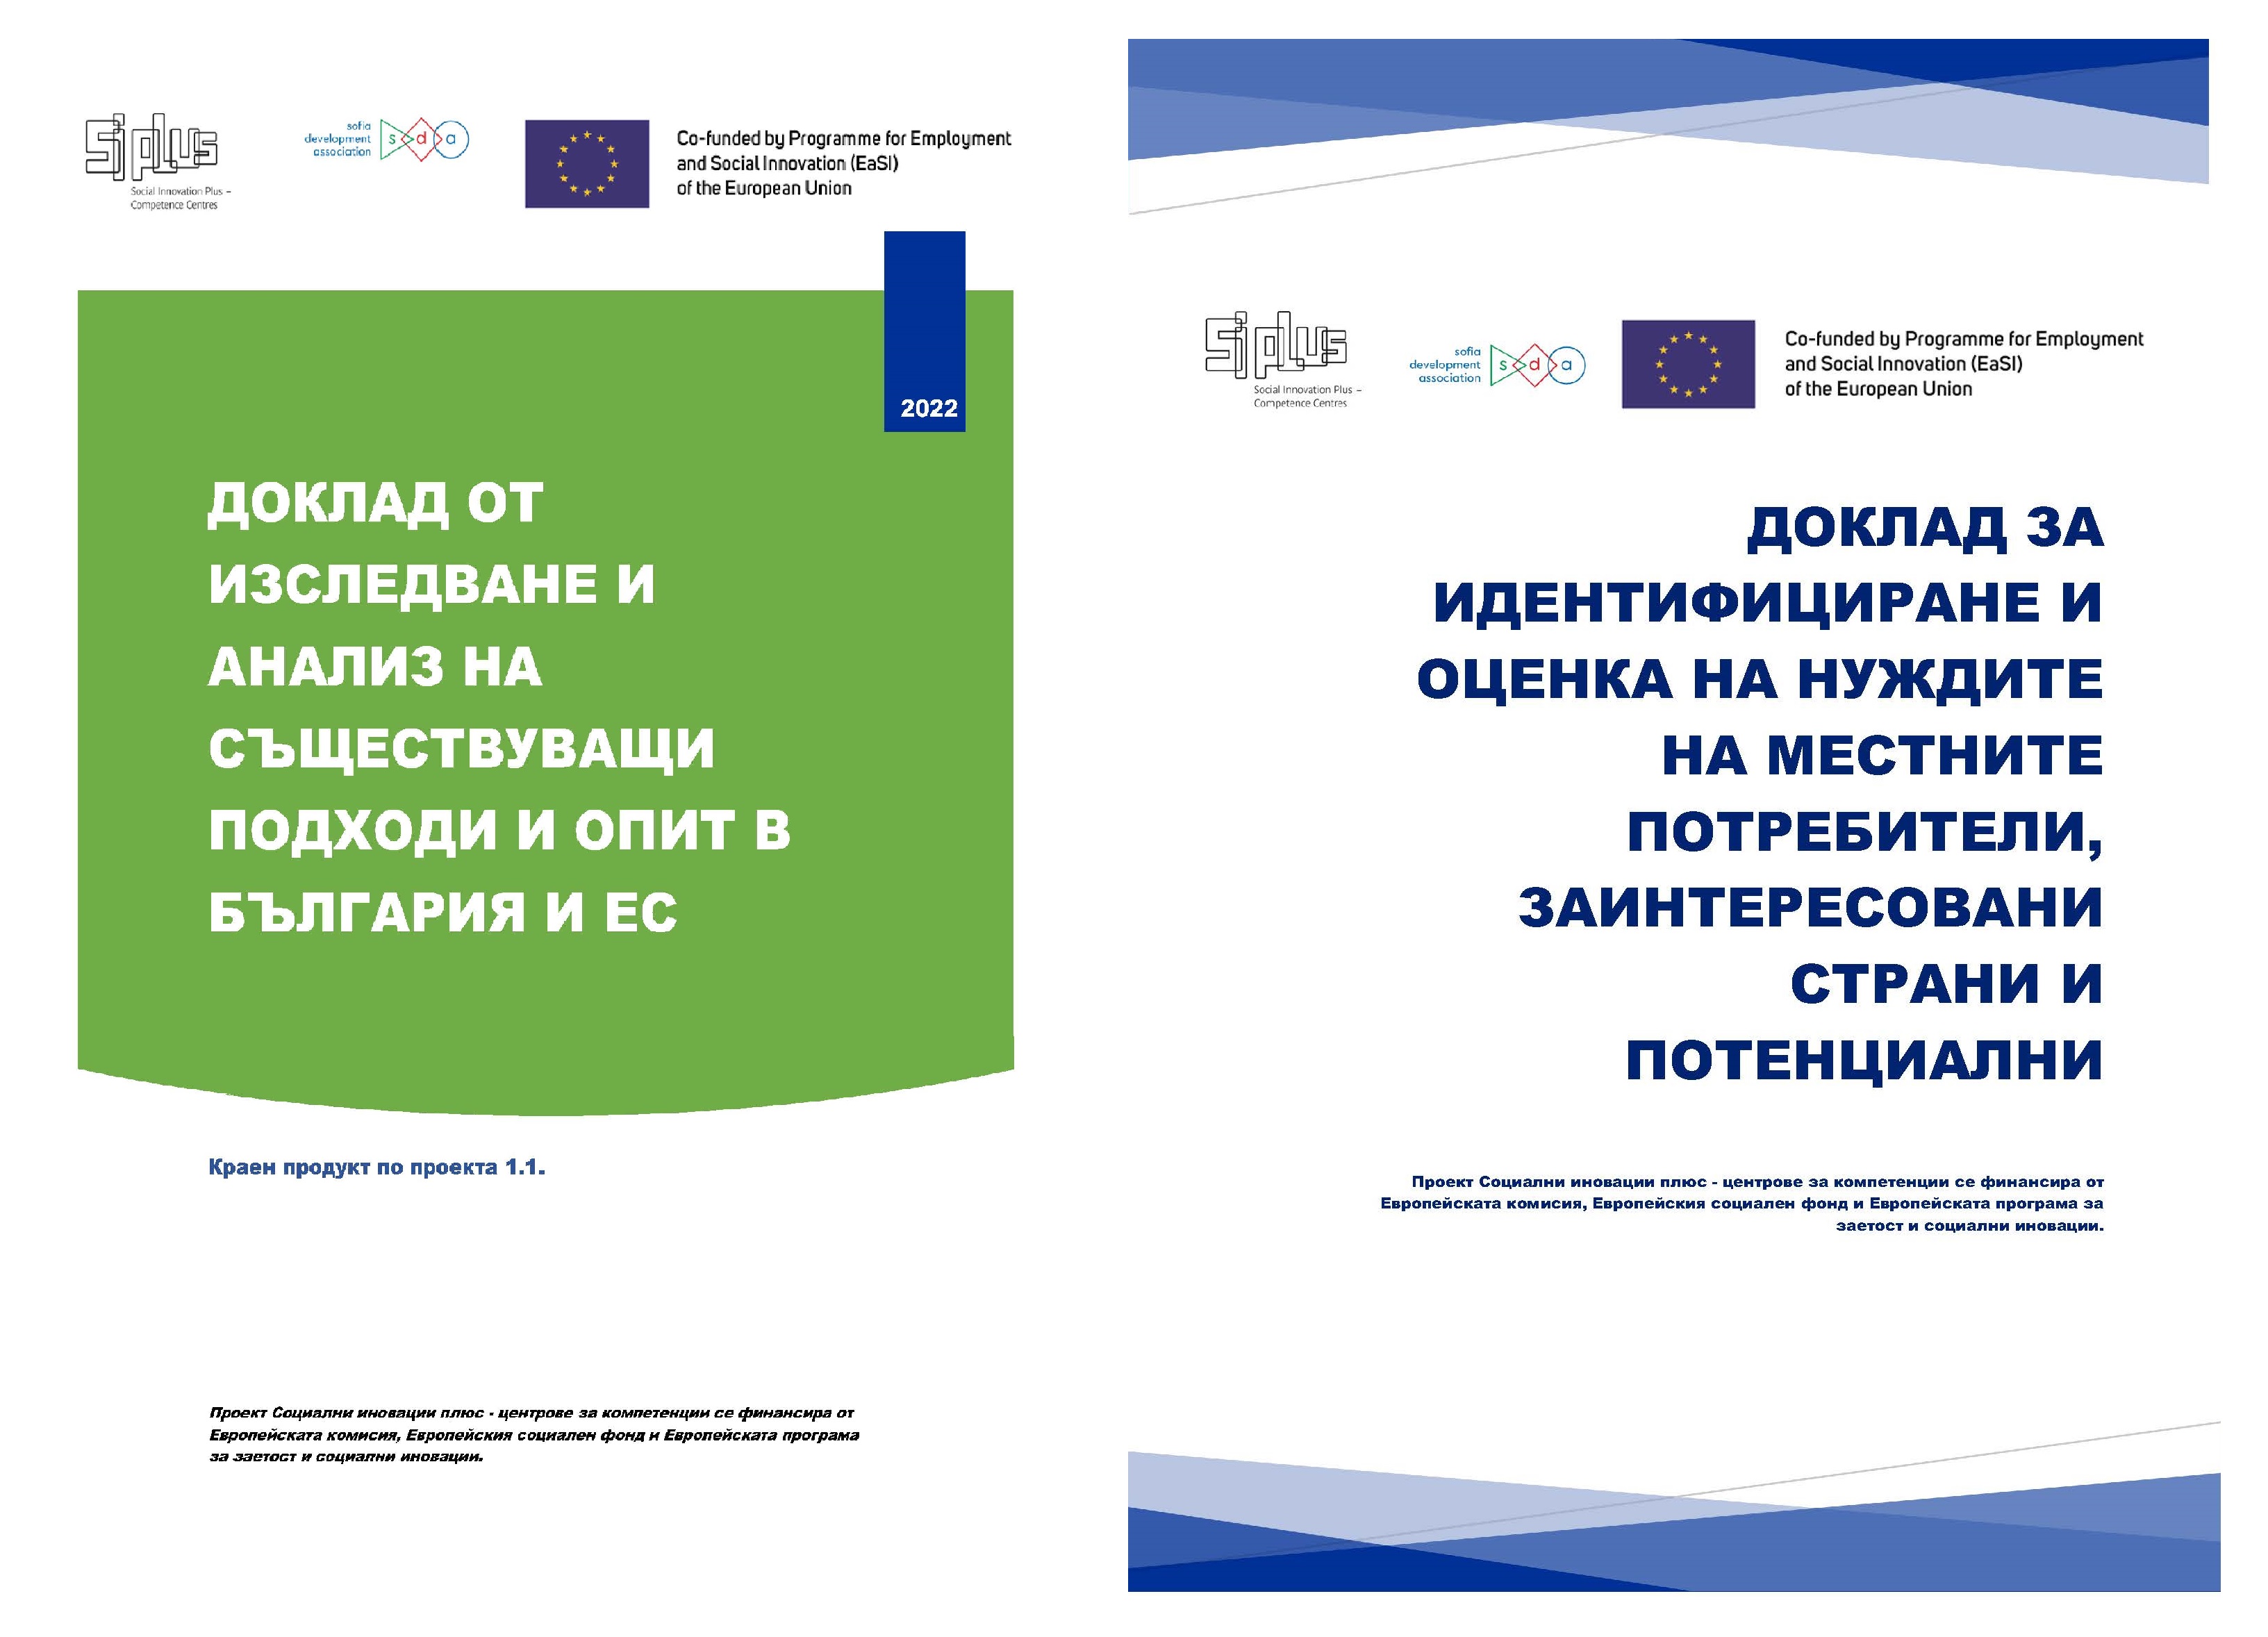 Асоциация за развитите на София публикува два доклада по темата за социалните иновации